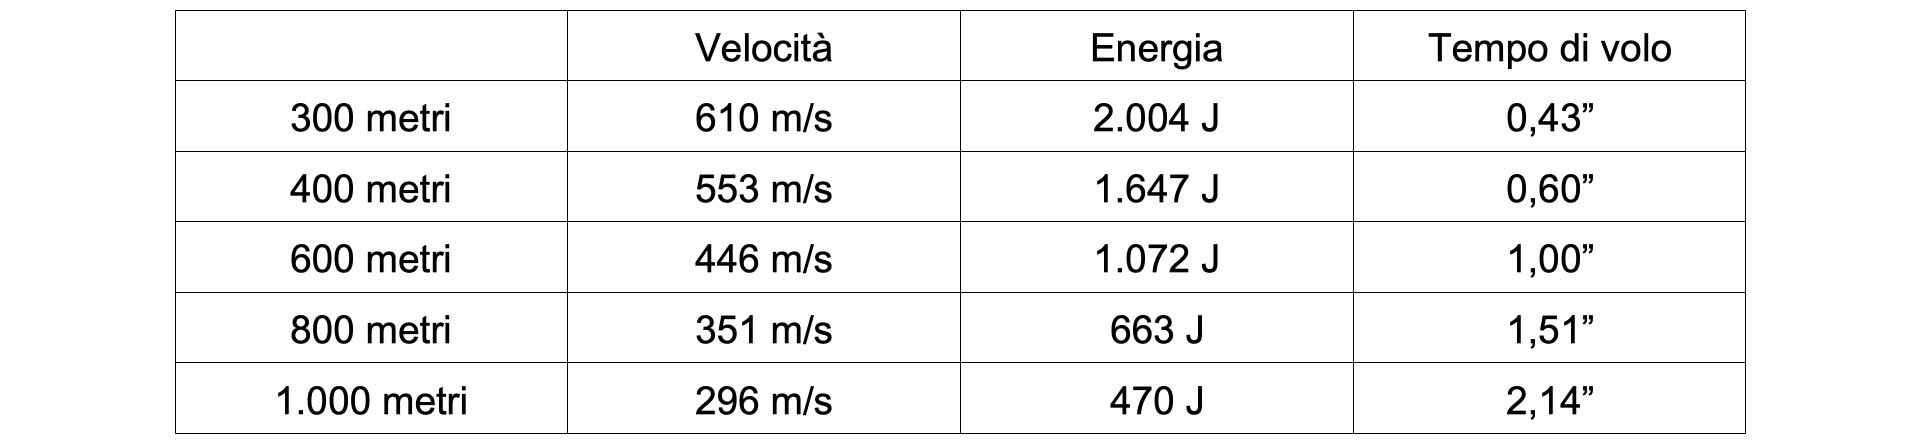 La tabella mostra come velocit residua, energia cinetica e tempo di volo variano in maniera significativa dopo i 300 metri